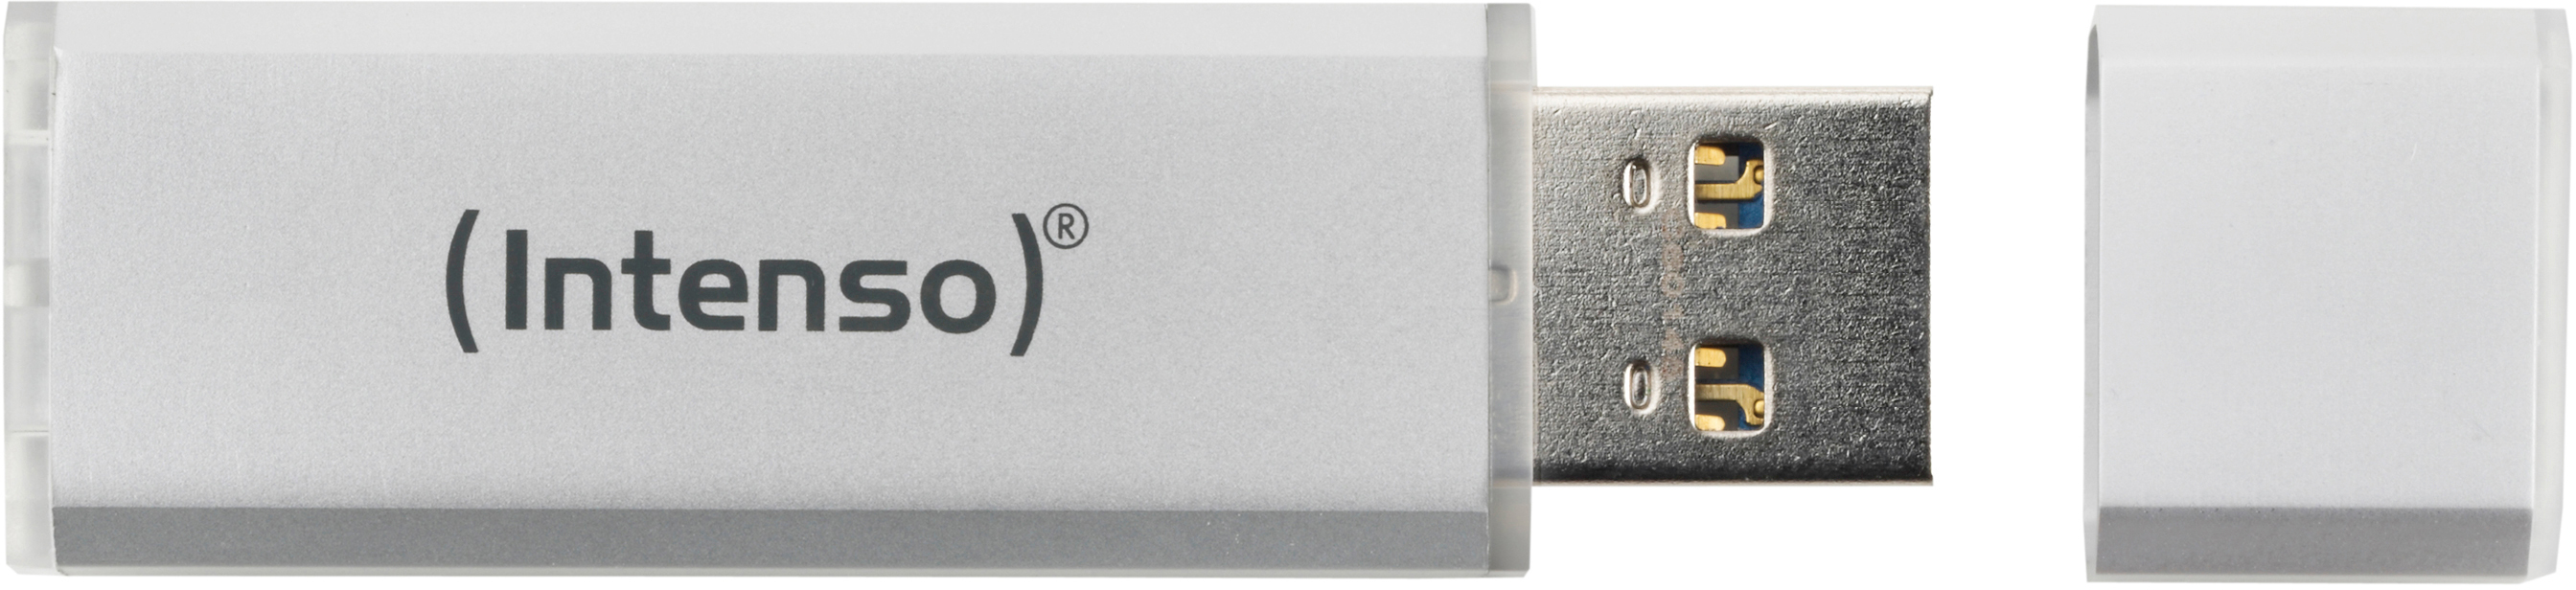 INTENSO 28 64 Alu MB/s, GB, Silber Line USB-Stick,